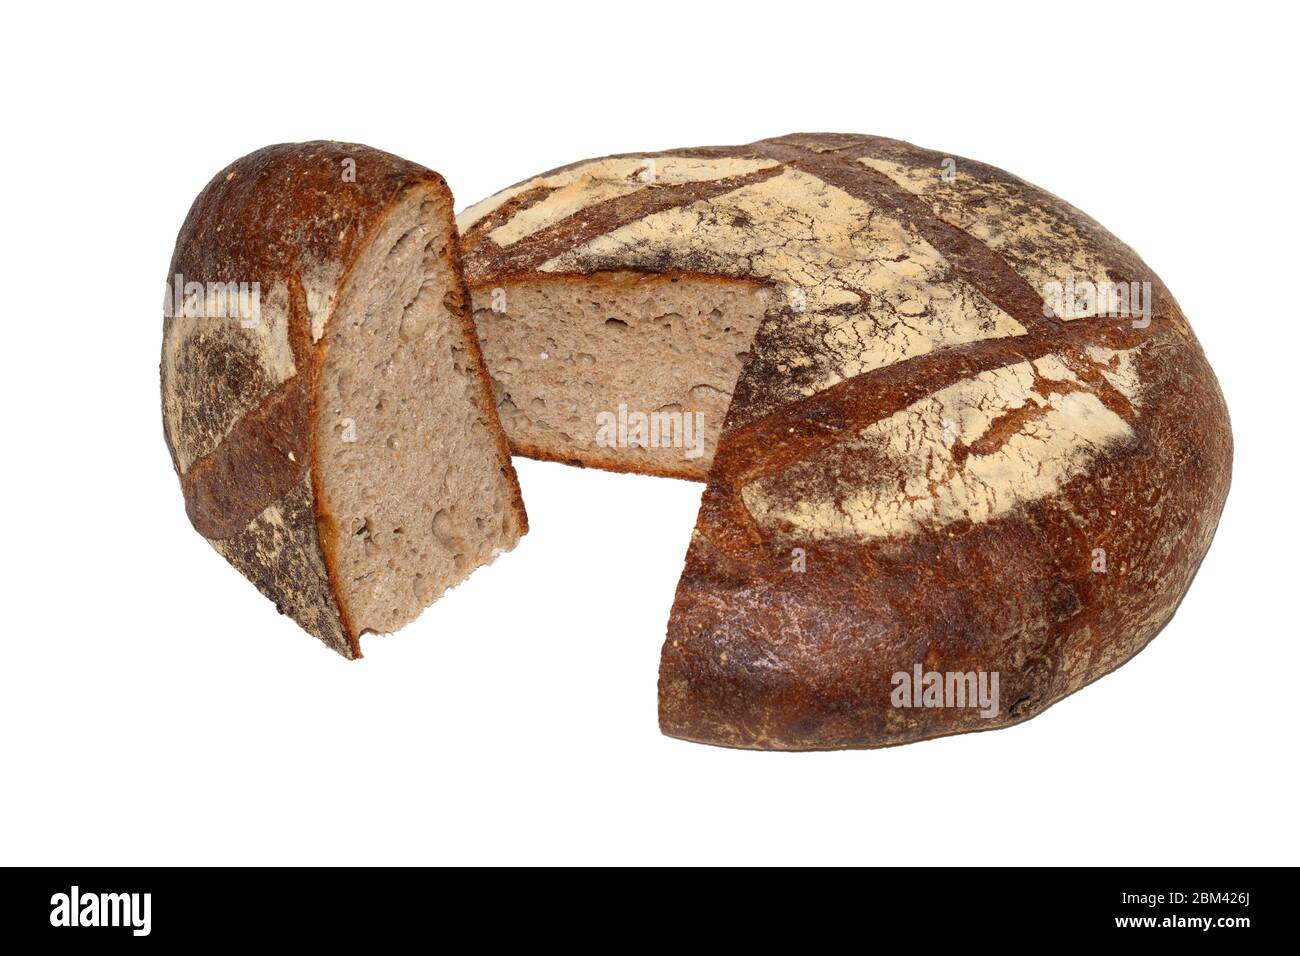 Ein großer runder Laib Michebrot aus Amys Bread, New York, mit einem geschnittenen Viertel, das isoliert auf weißem Hintergrund geschnitten wurde. Ausschnitt. Stockfoto